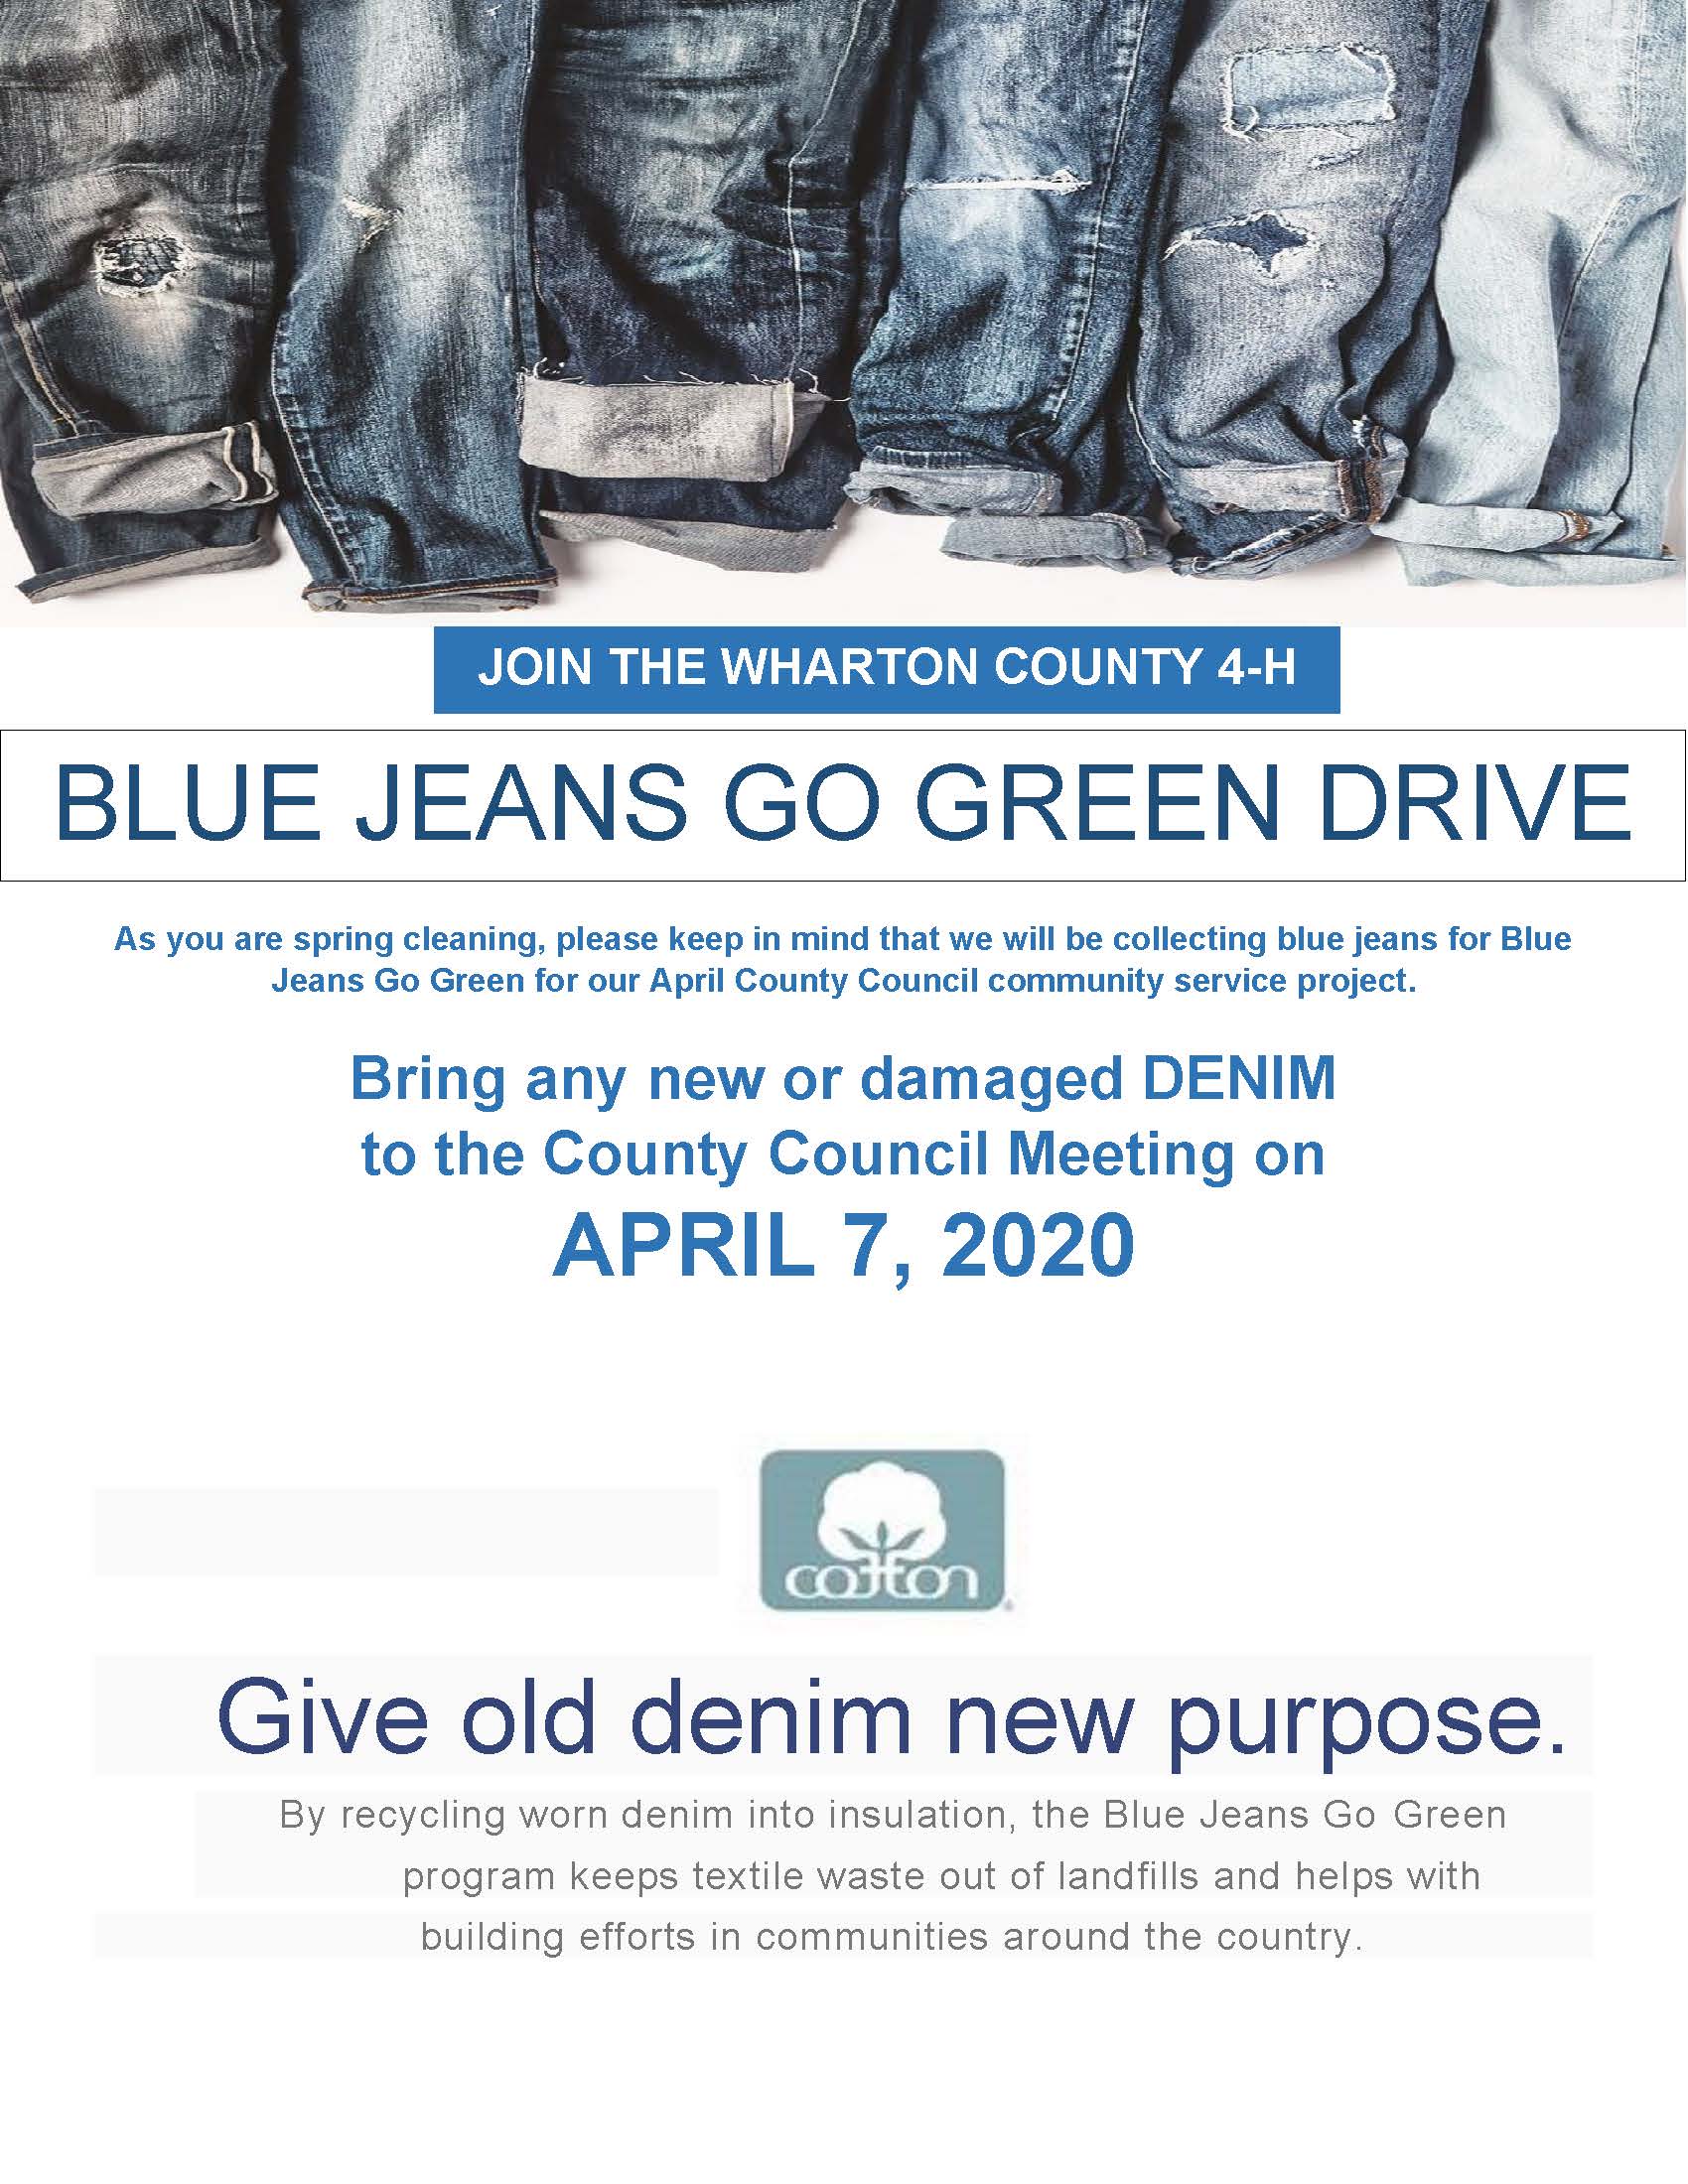 Blue Jean Go Green Drive | Wharton County 4-H